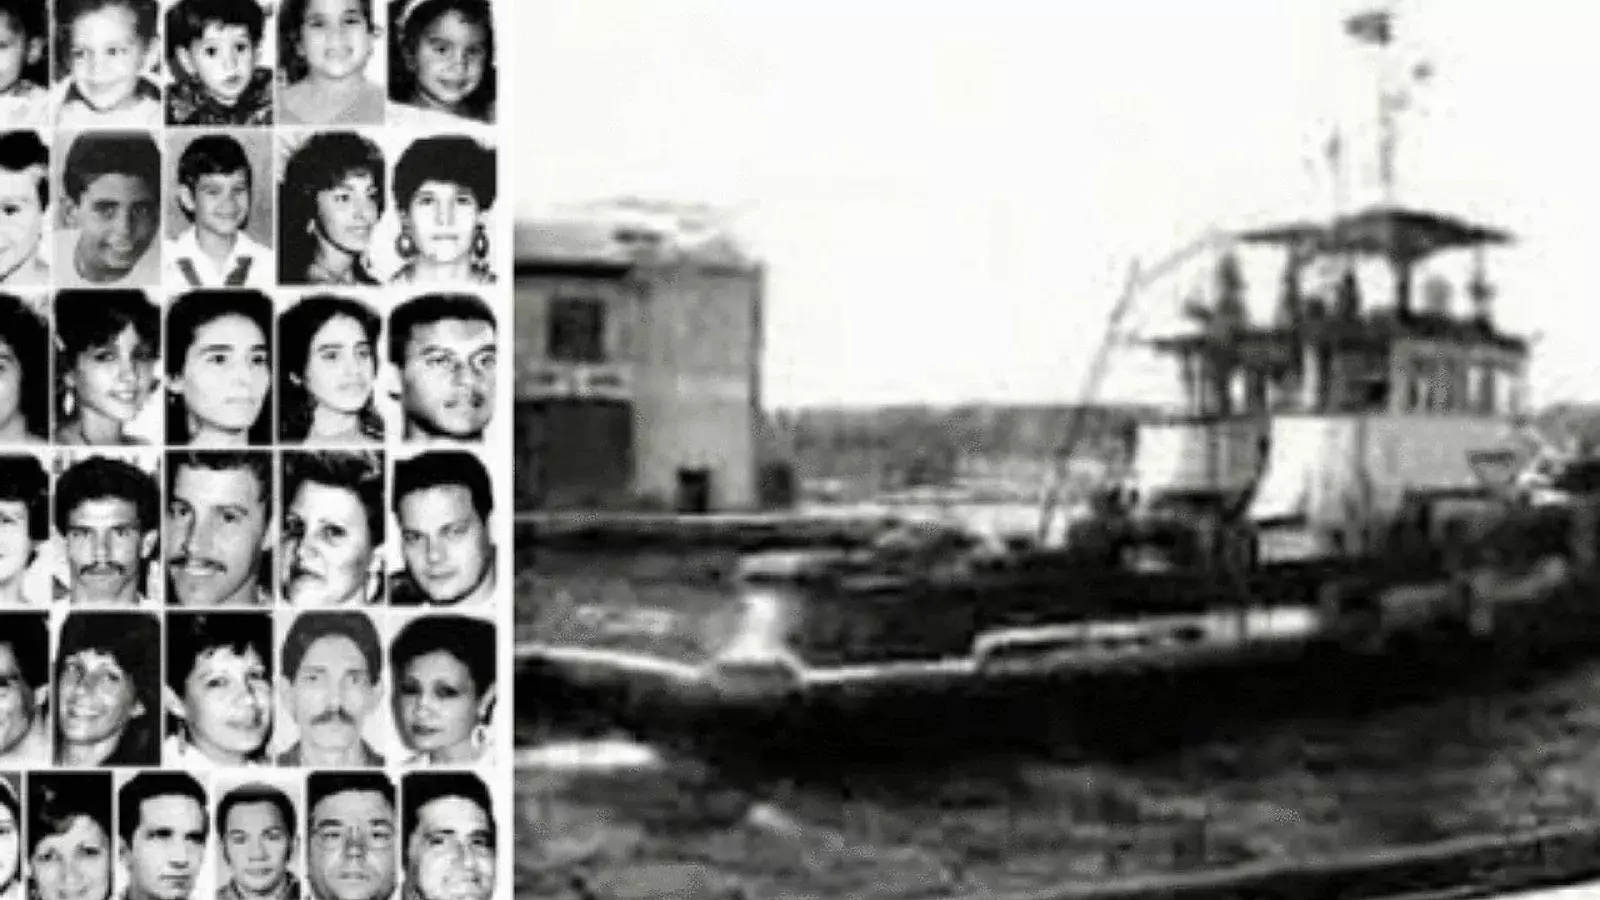 Se cumplen 29 años del hundimiento del remolcador "13 de marzo" por parte de la dictadura cubana